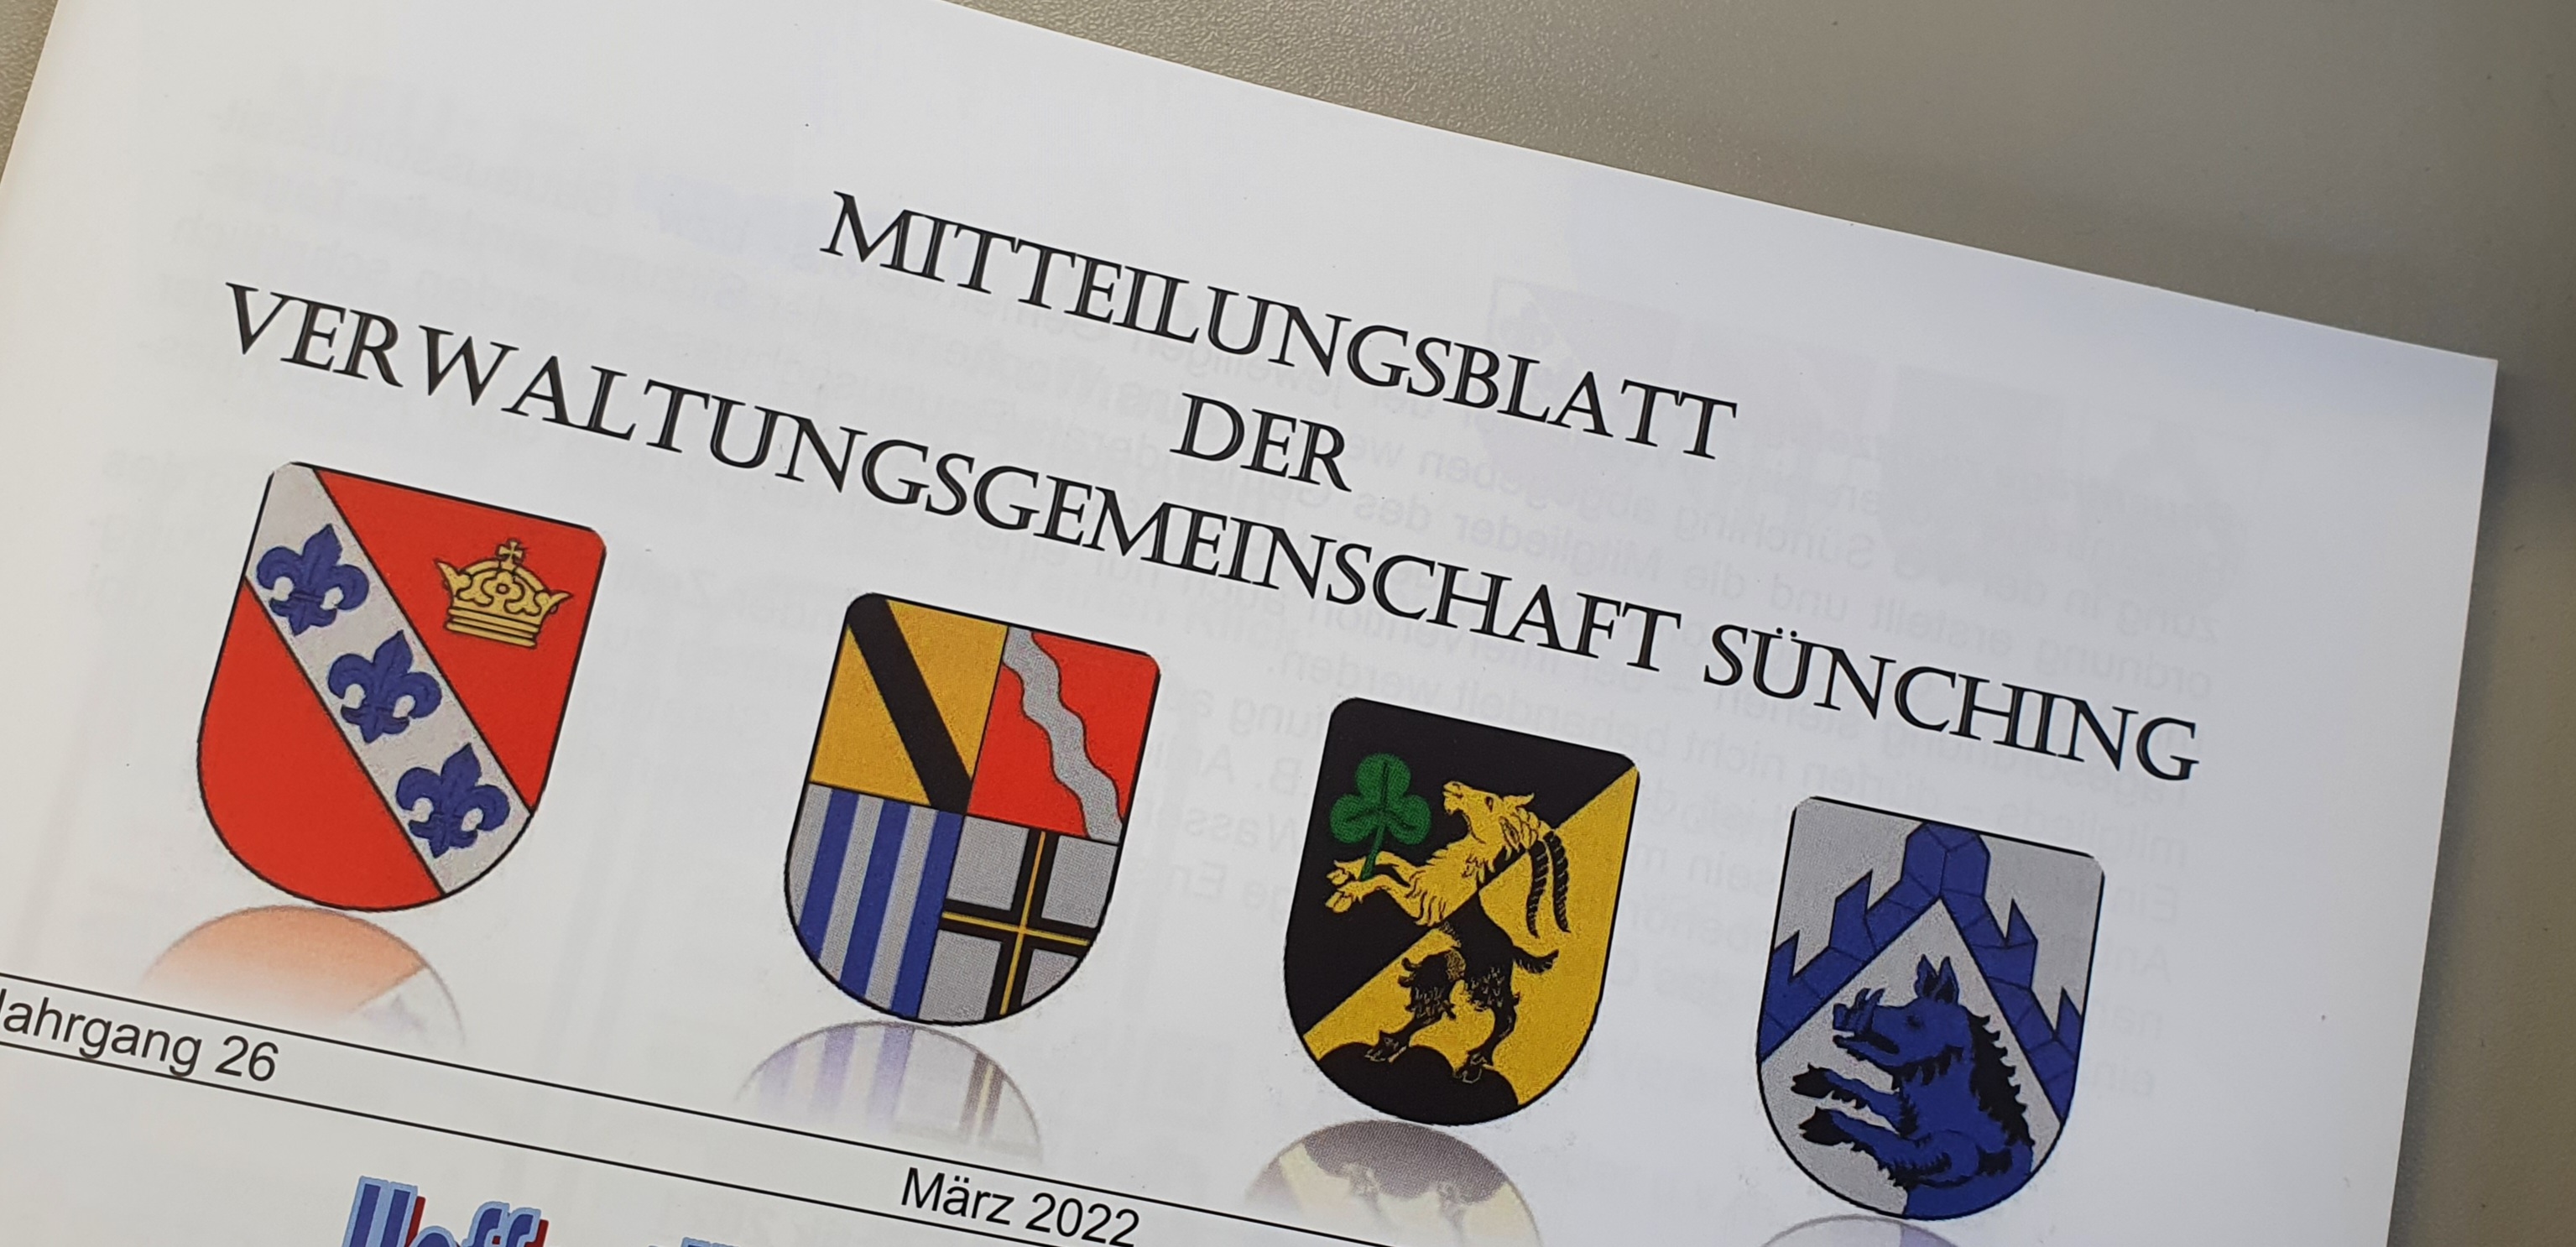 Mitteilungsblatt der Verwaltungsgemeinschaft Sünching